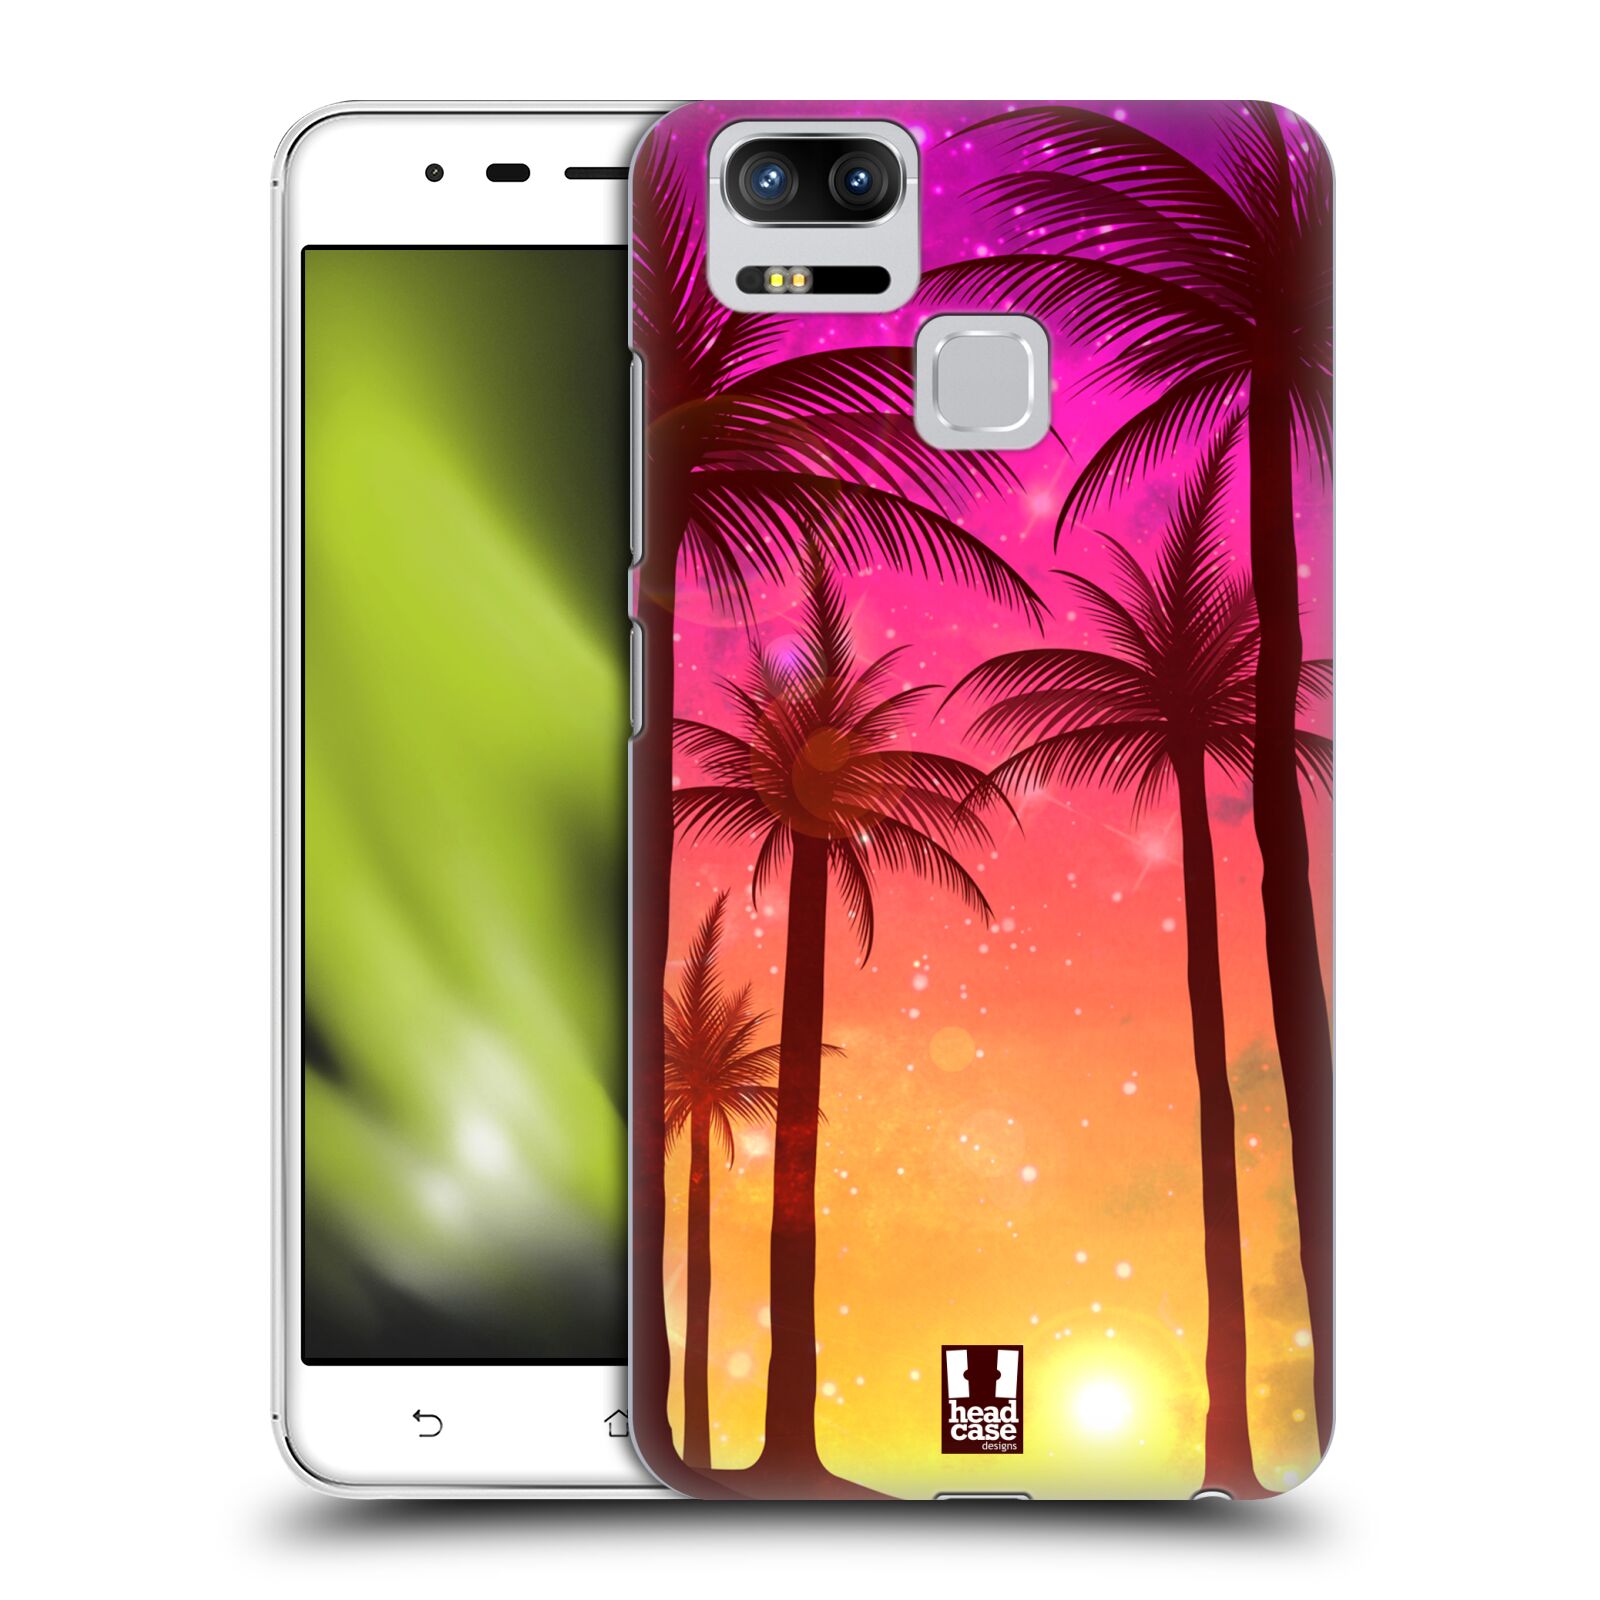 HEAD CASE plastový obal na mobil Asus Zenfone 3 Zoom ZE553KL vzor Kreslený motiv silueta moře a palmy RŮŽOVÁ